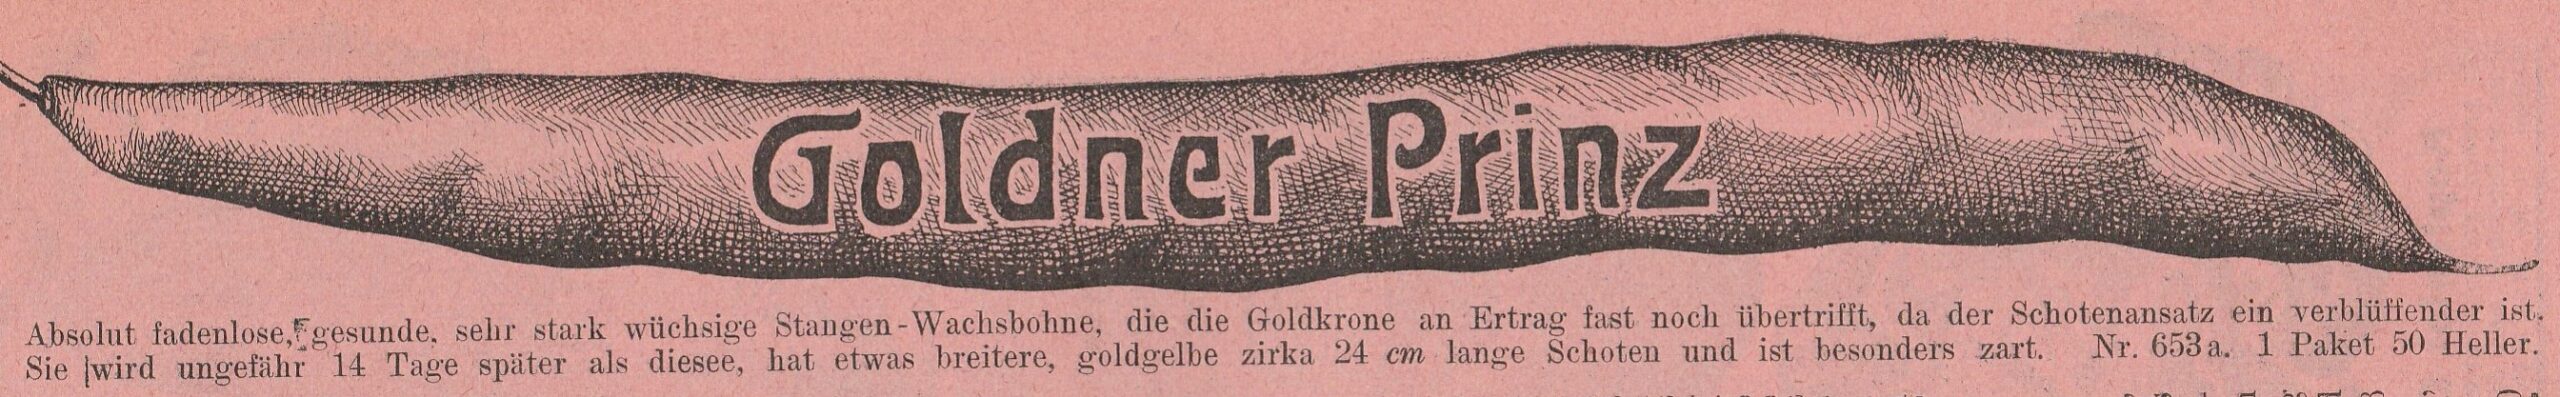 Goldner Prinz-1914-